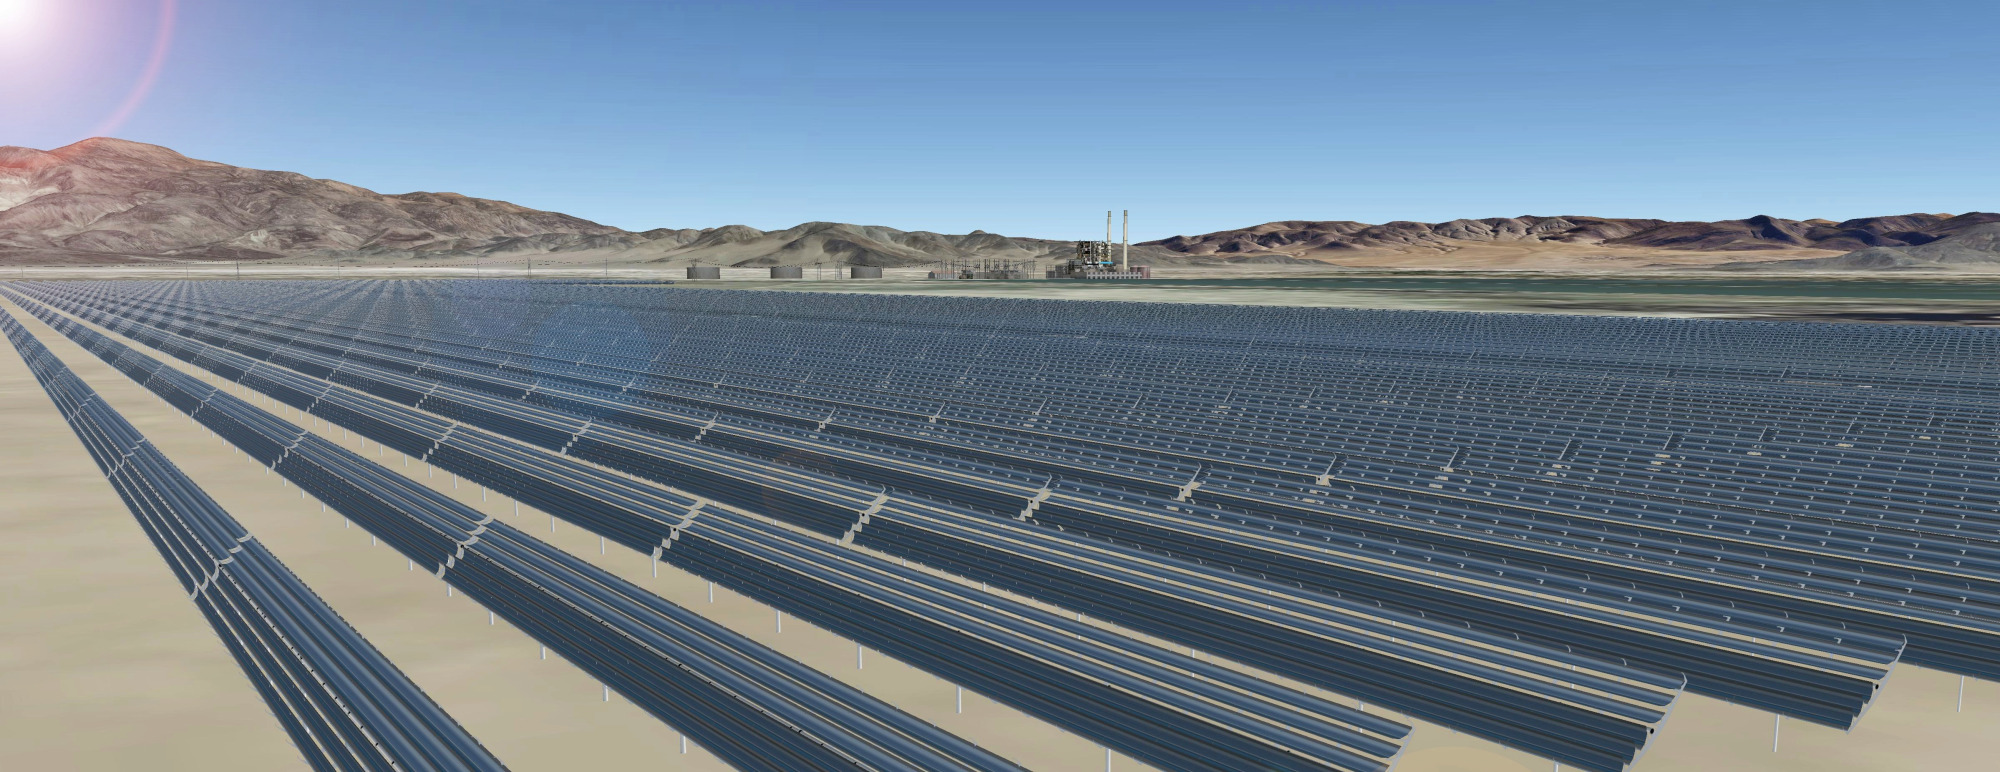 Apple xây “cánh đồng mặt trời" rộng 530 ha, phục vụ cho các cơ sở ở California